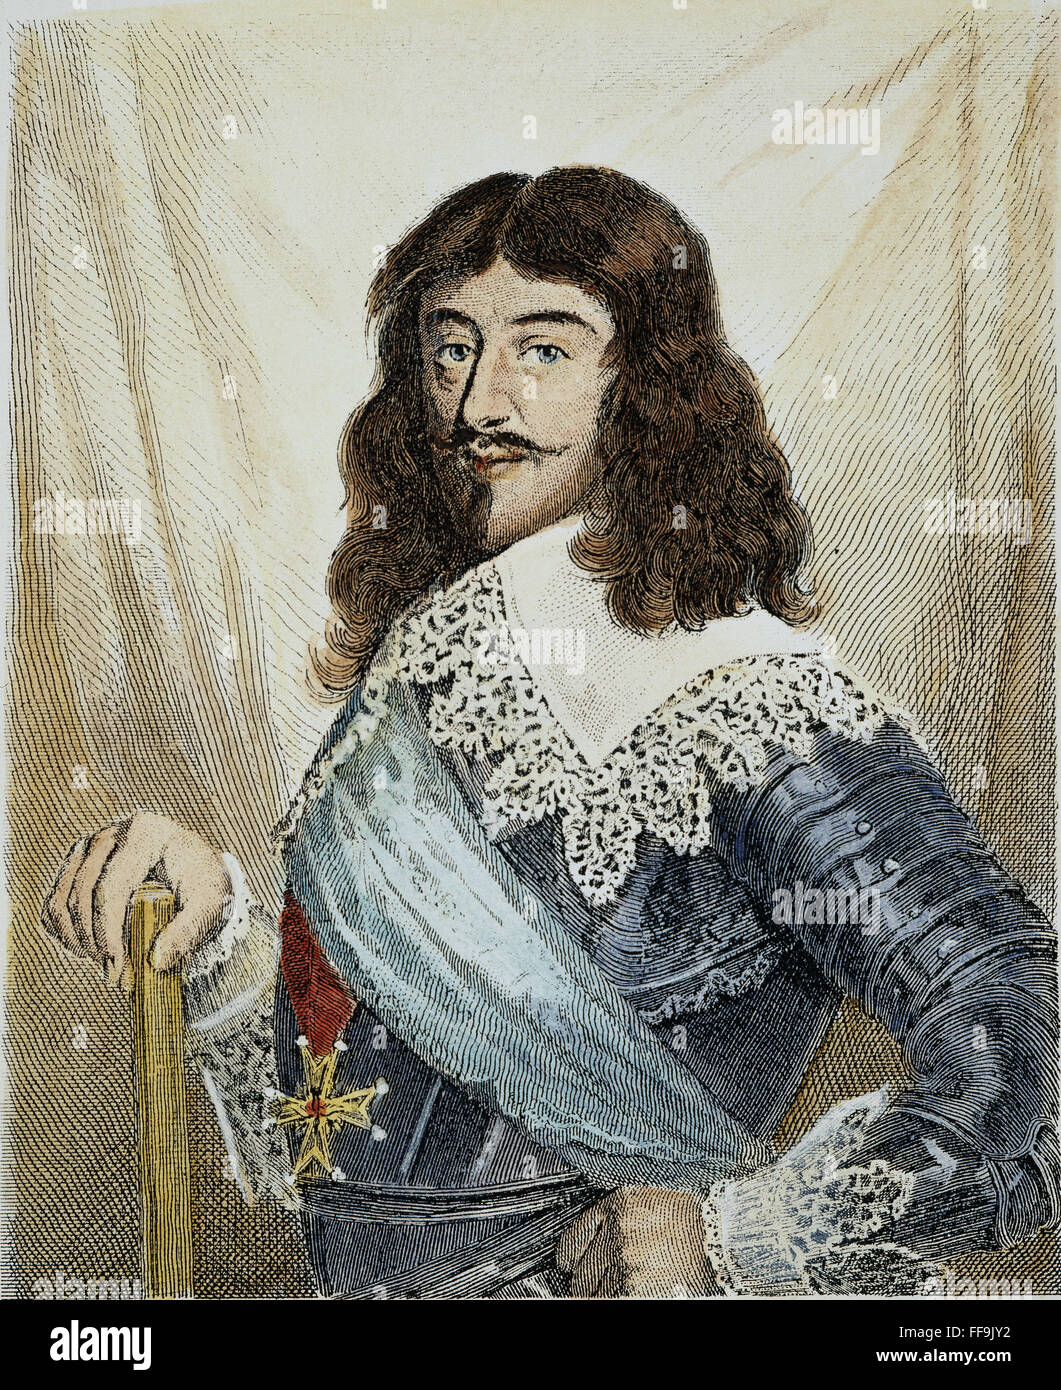 LUDWIG XIII. (1601-1643). /nKing von Frankreich, 1610-43: Linie, Gravur, Französisch, 19. Jahrhundert. Stockfoto